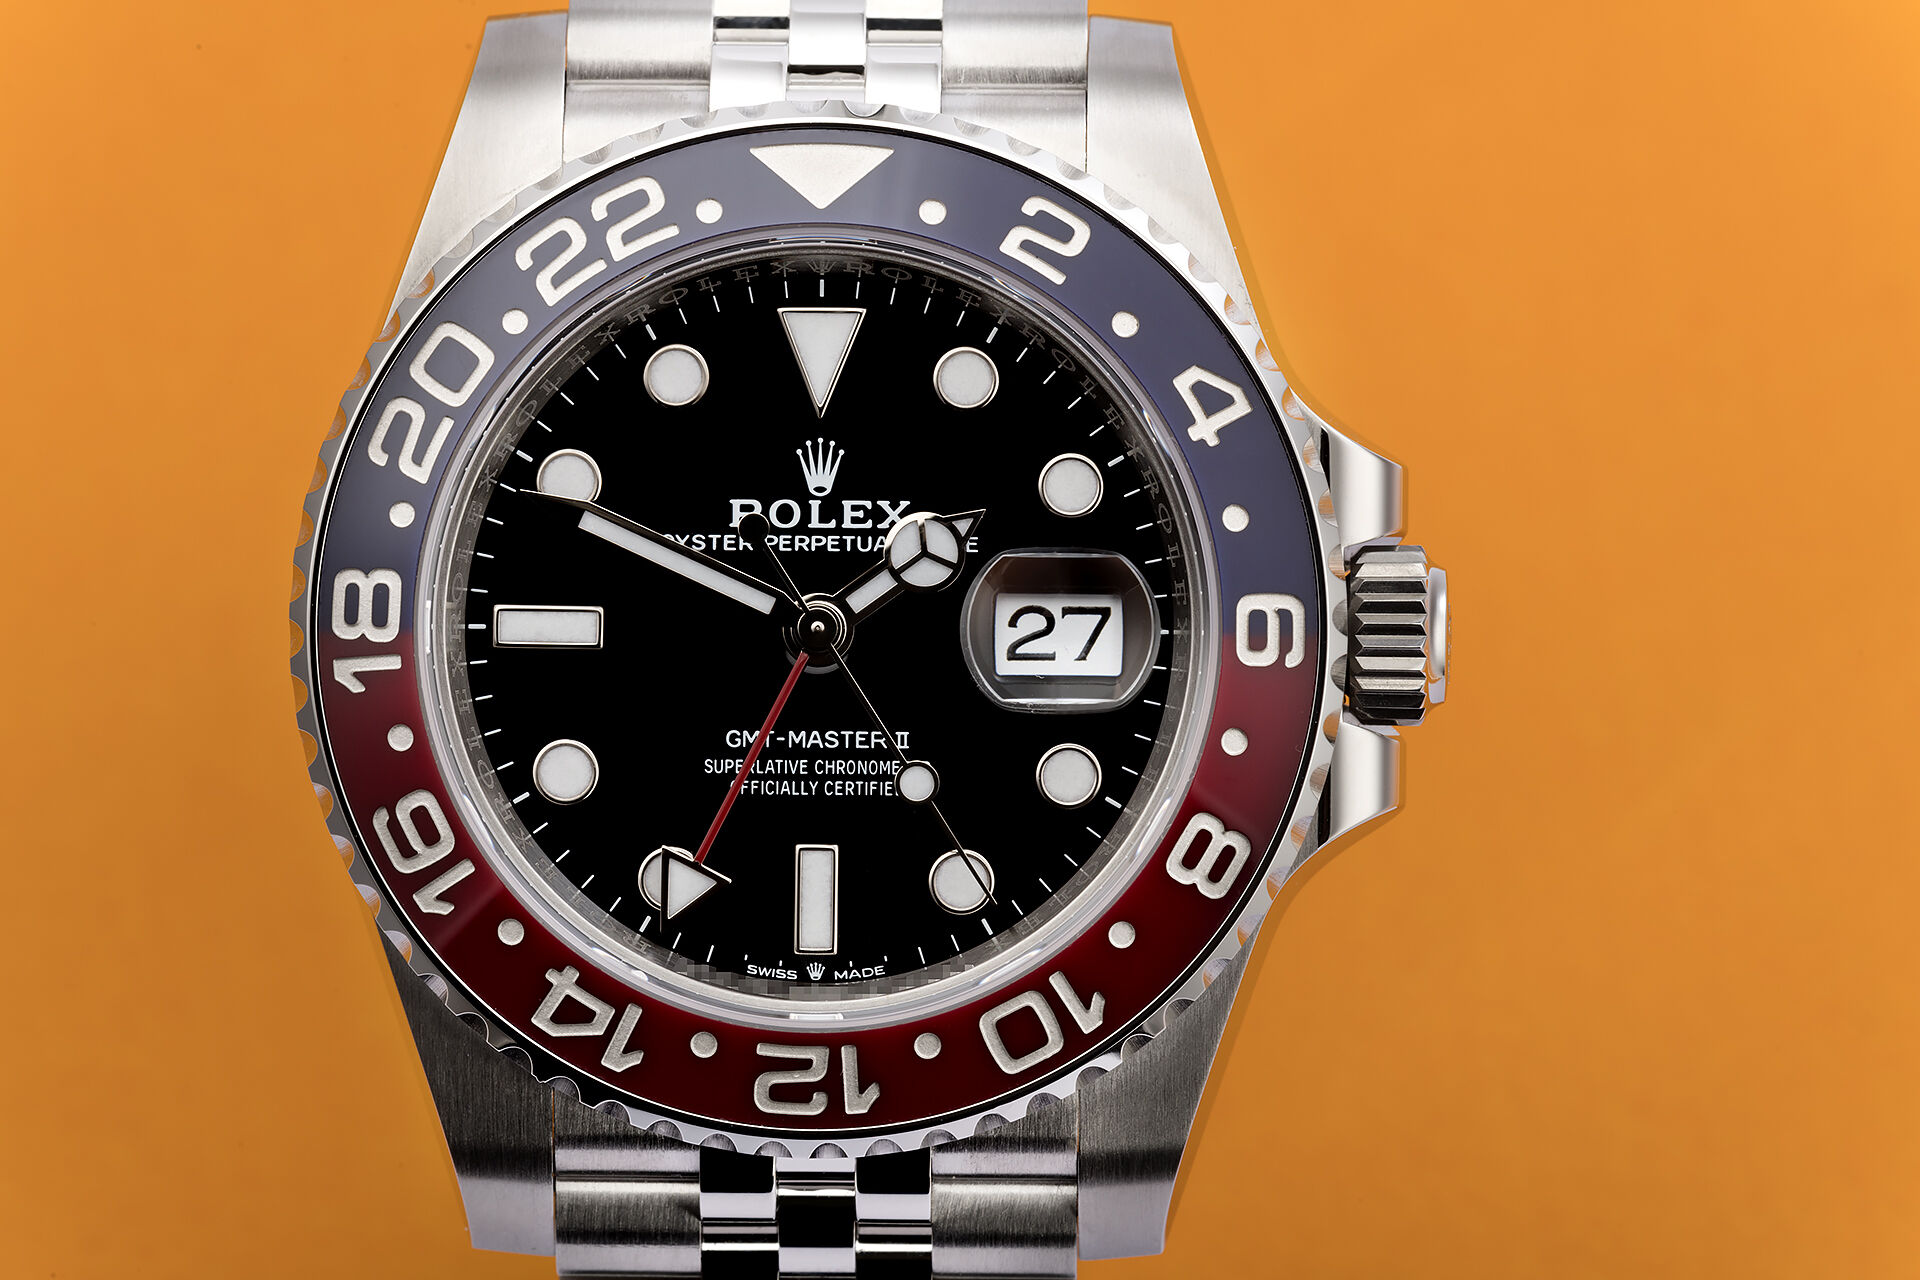 ref 126710BLRO | 5 Year Rolex Warranty | Rolex GMT-Master II